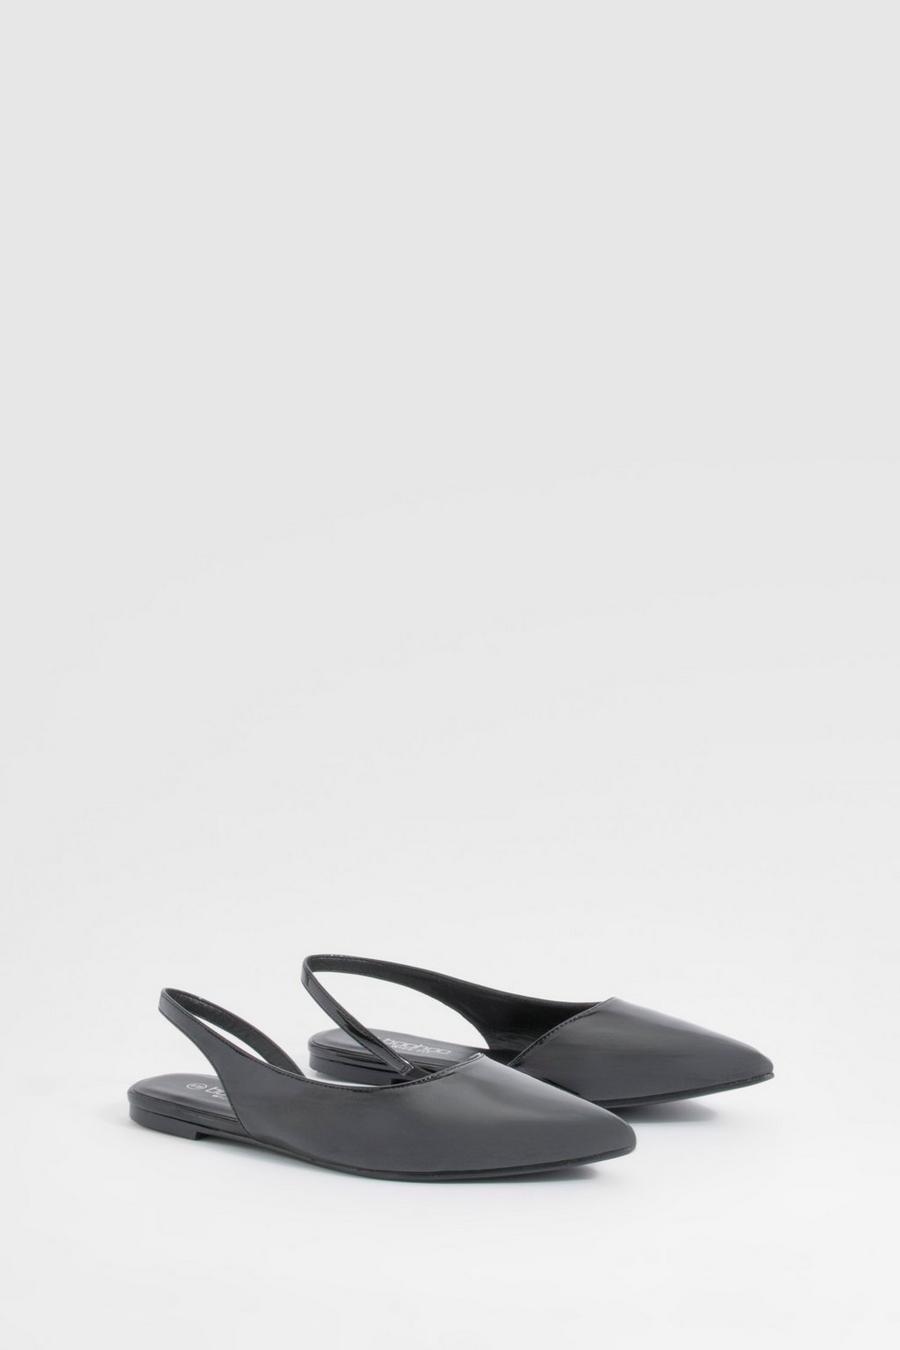 Chaussures plates pointues avec bride à la cheville - Pointure large, Black